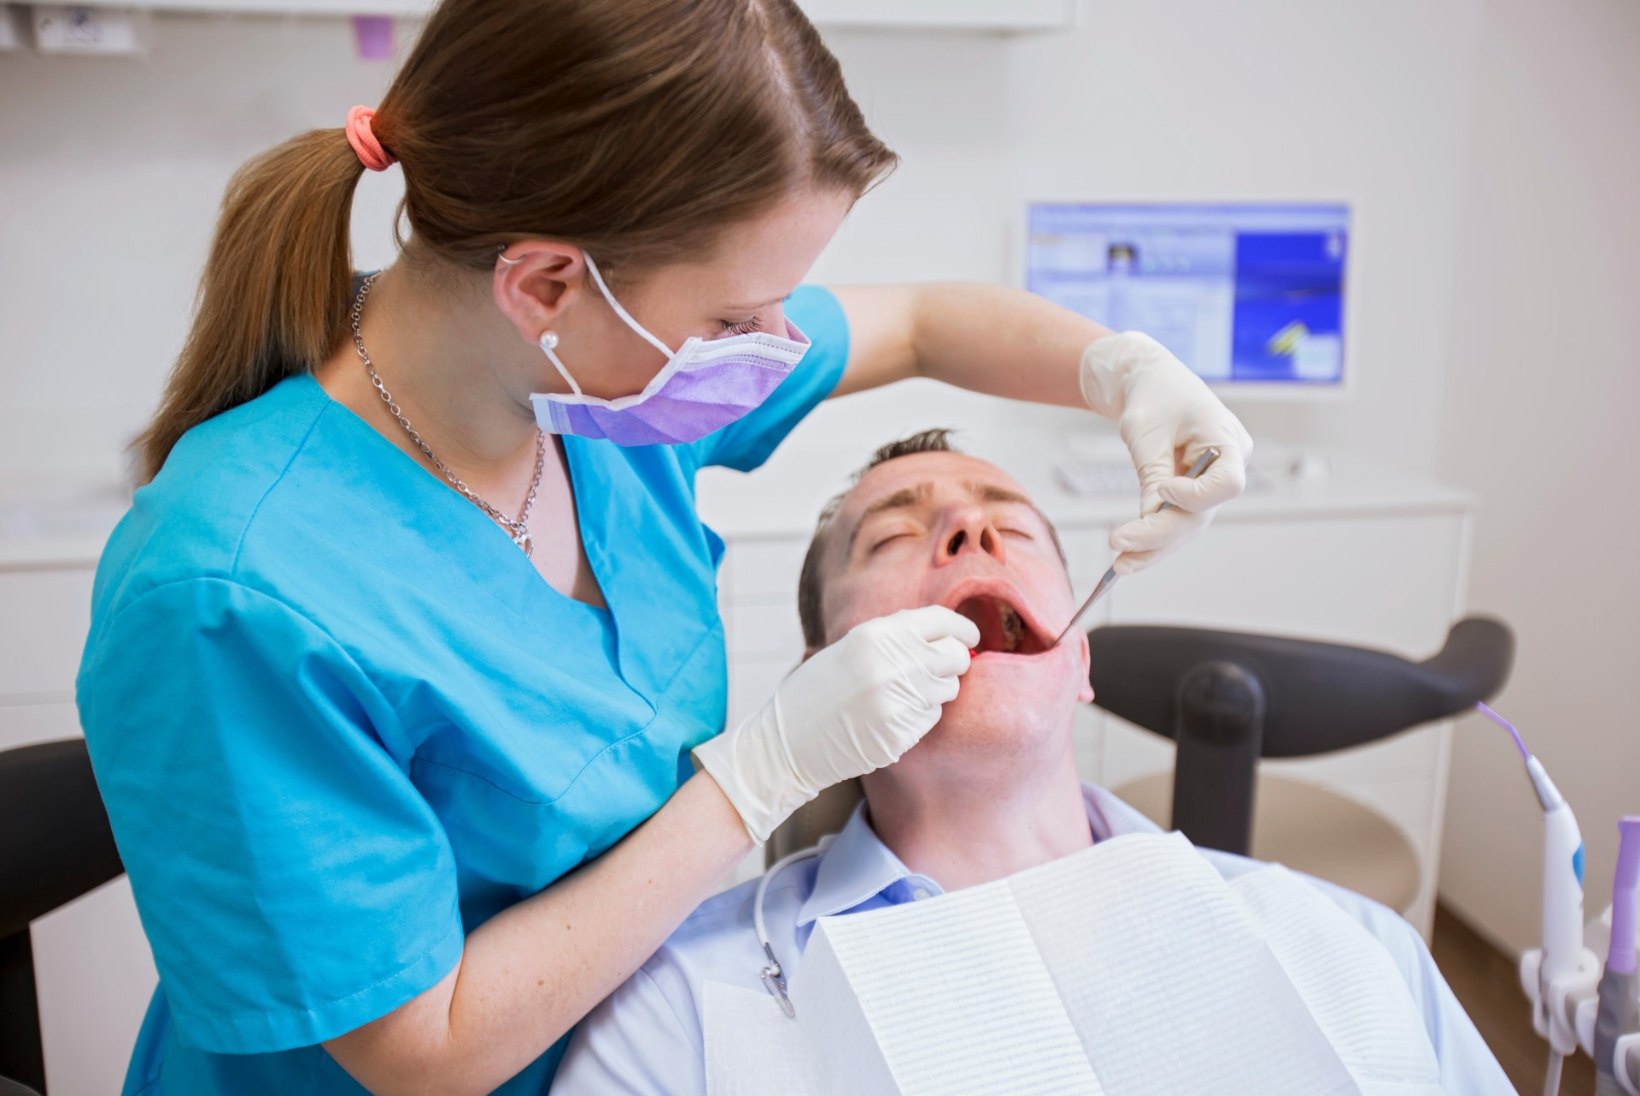 VÄHK VÕIB ARENEDA KA SUUS: hambaarstid soovitavad ebatavalisi muutusi kindlasti kontrollida